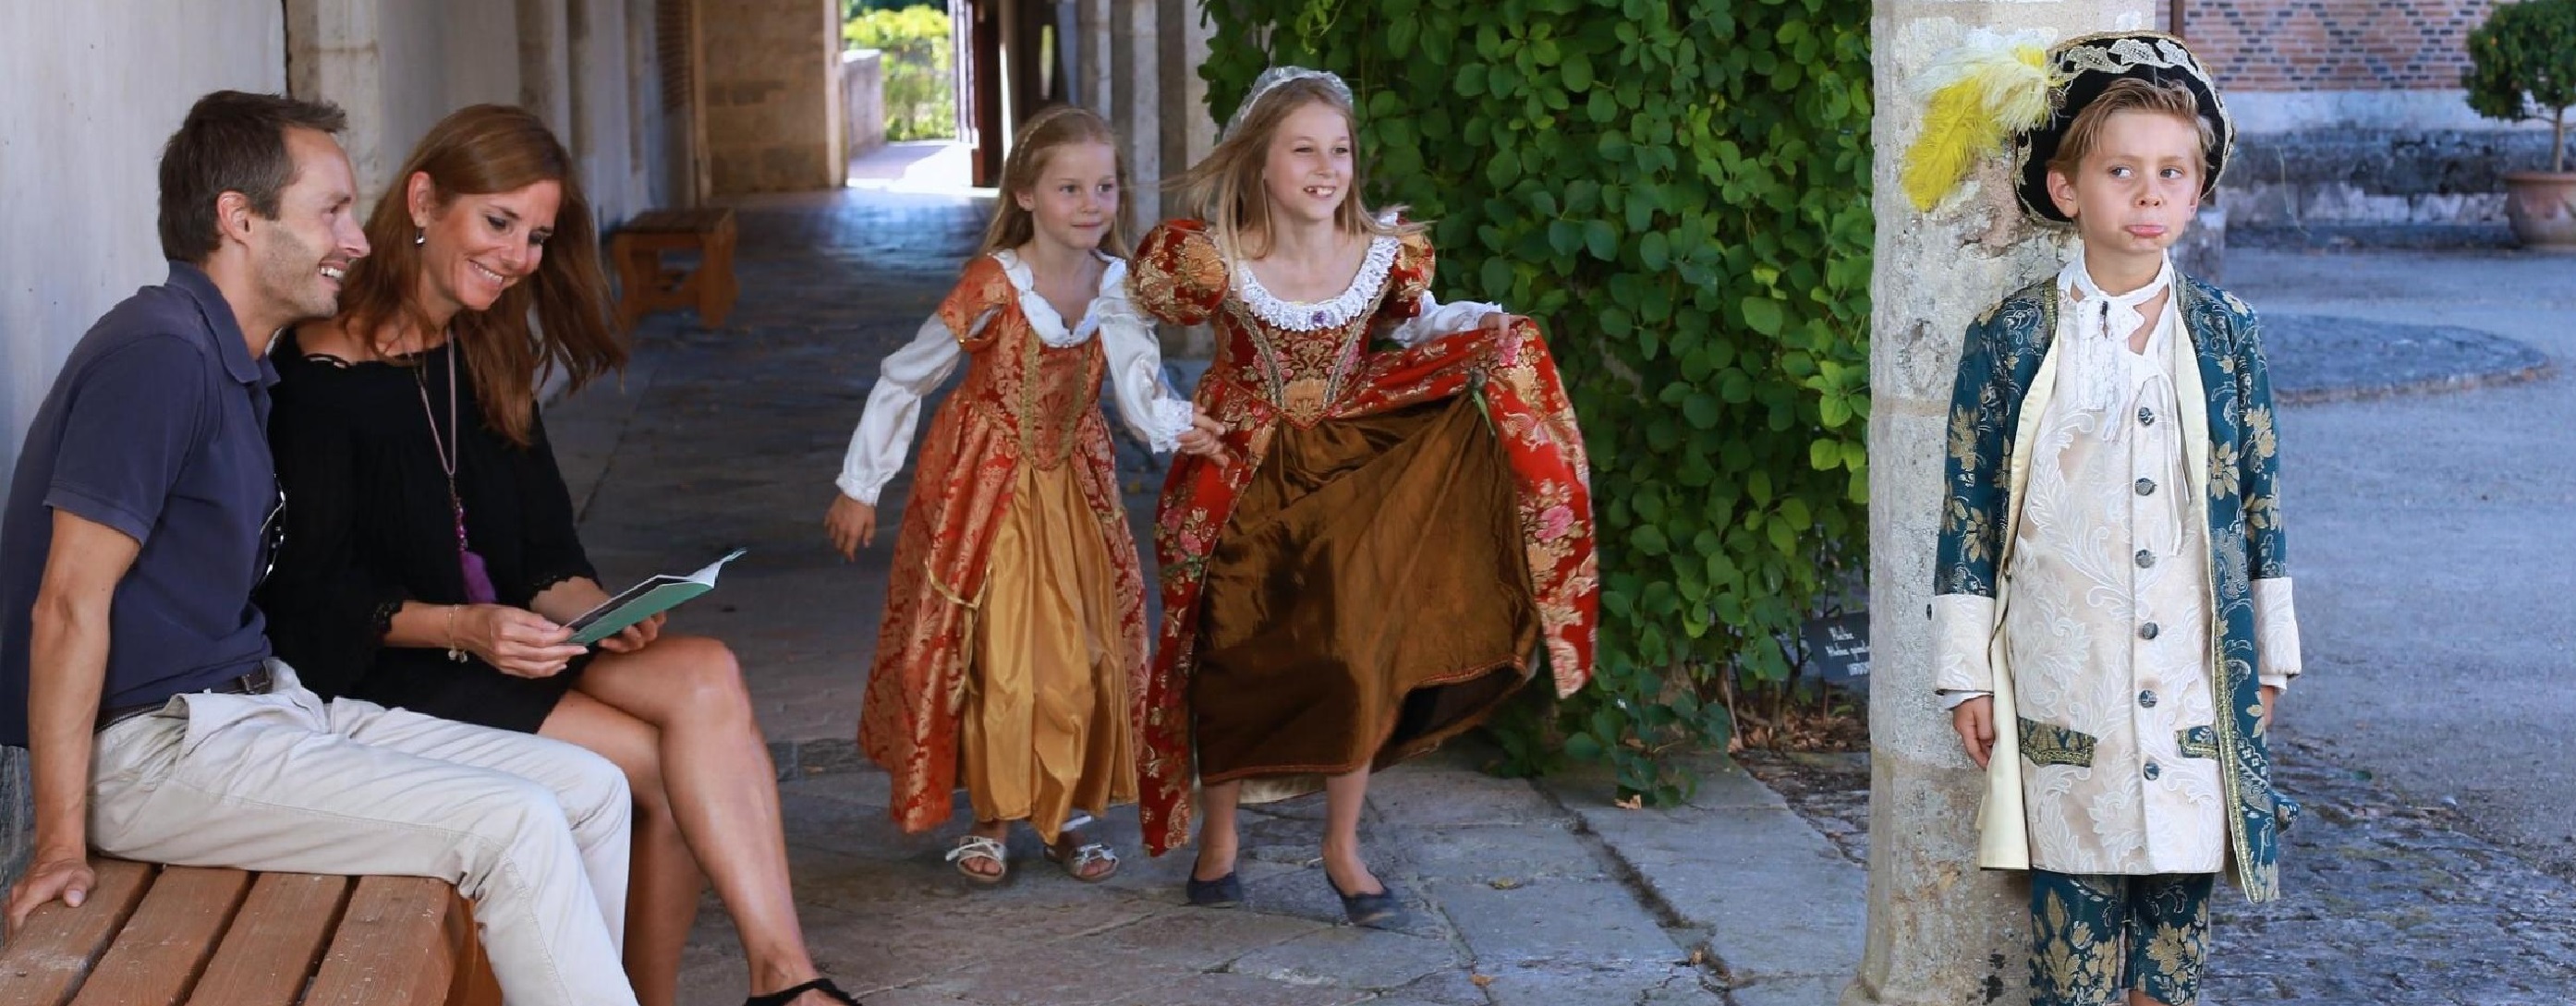 Enfants jouant dans la cour du château de Chamerolles